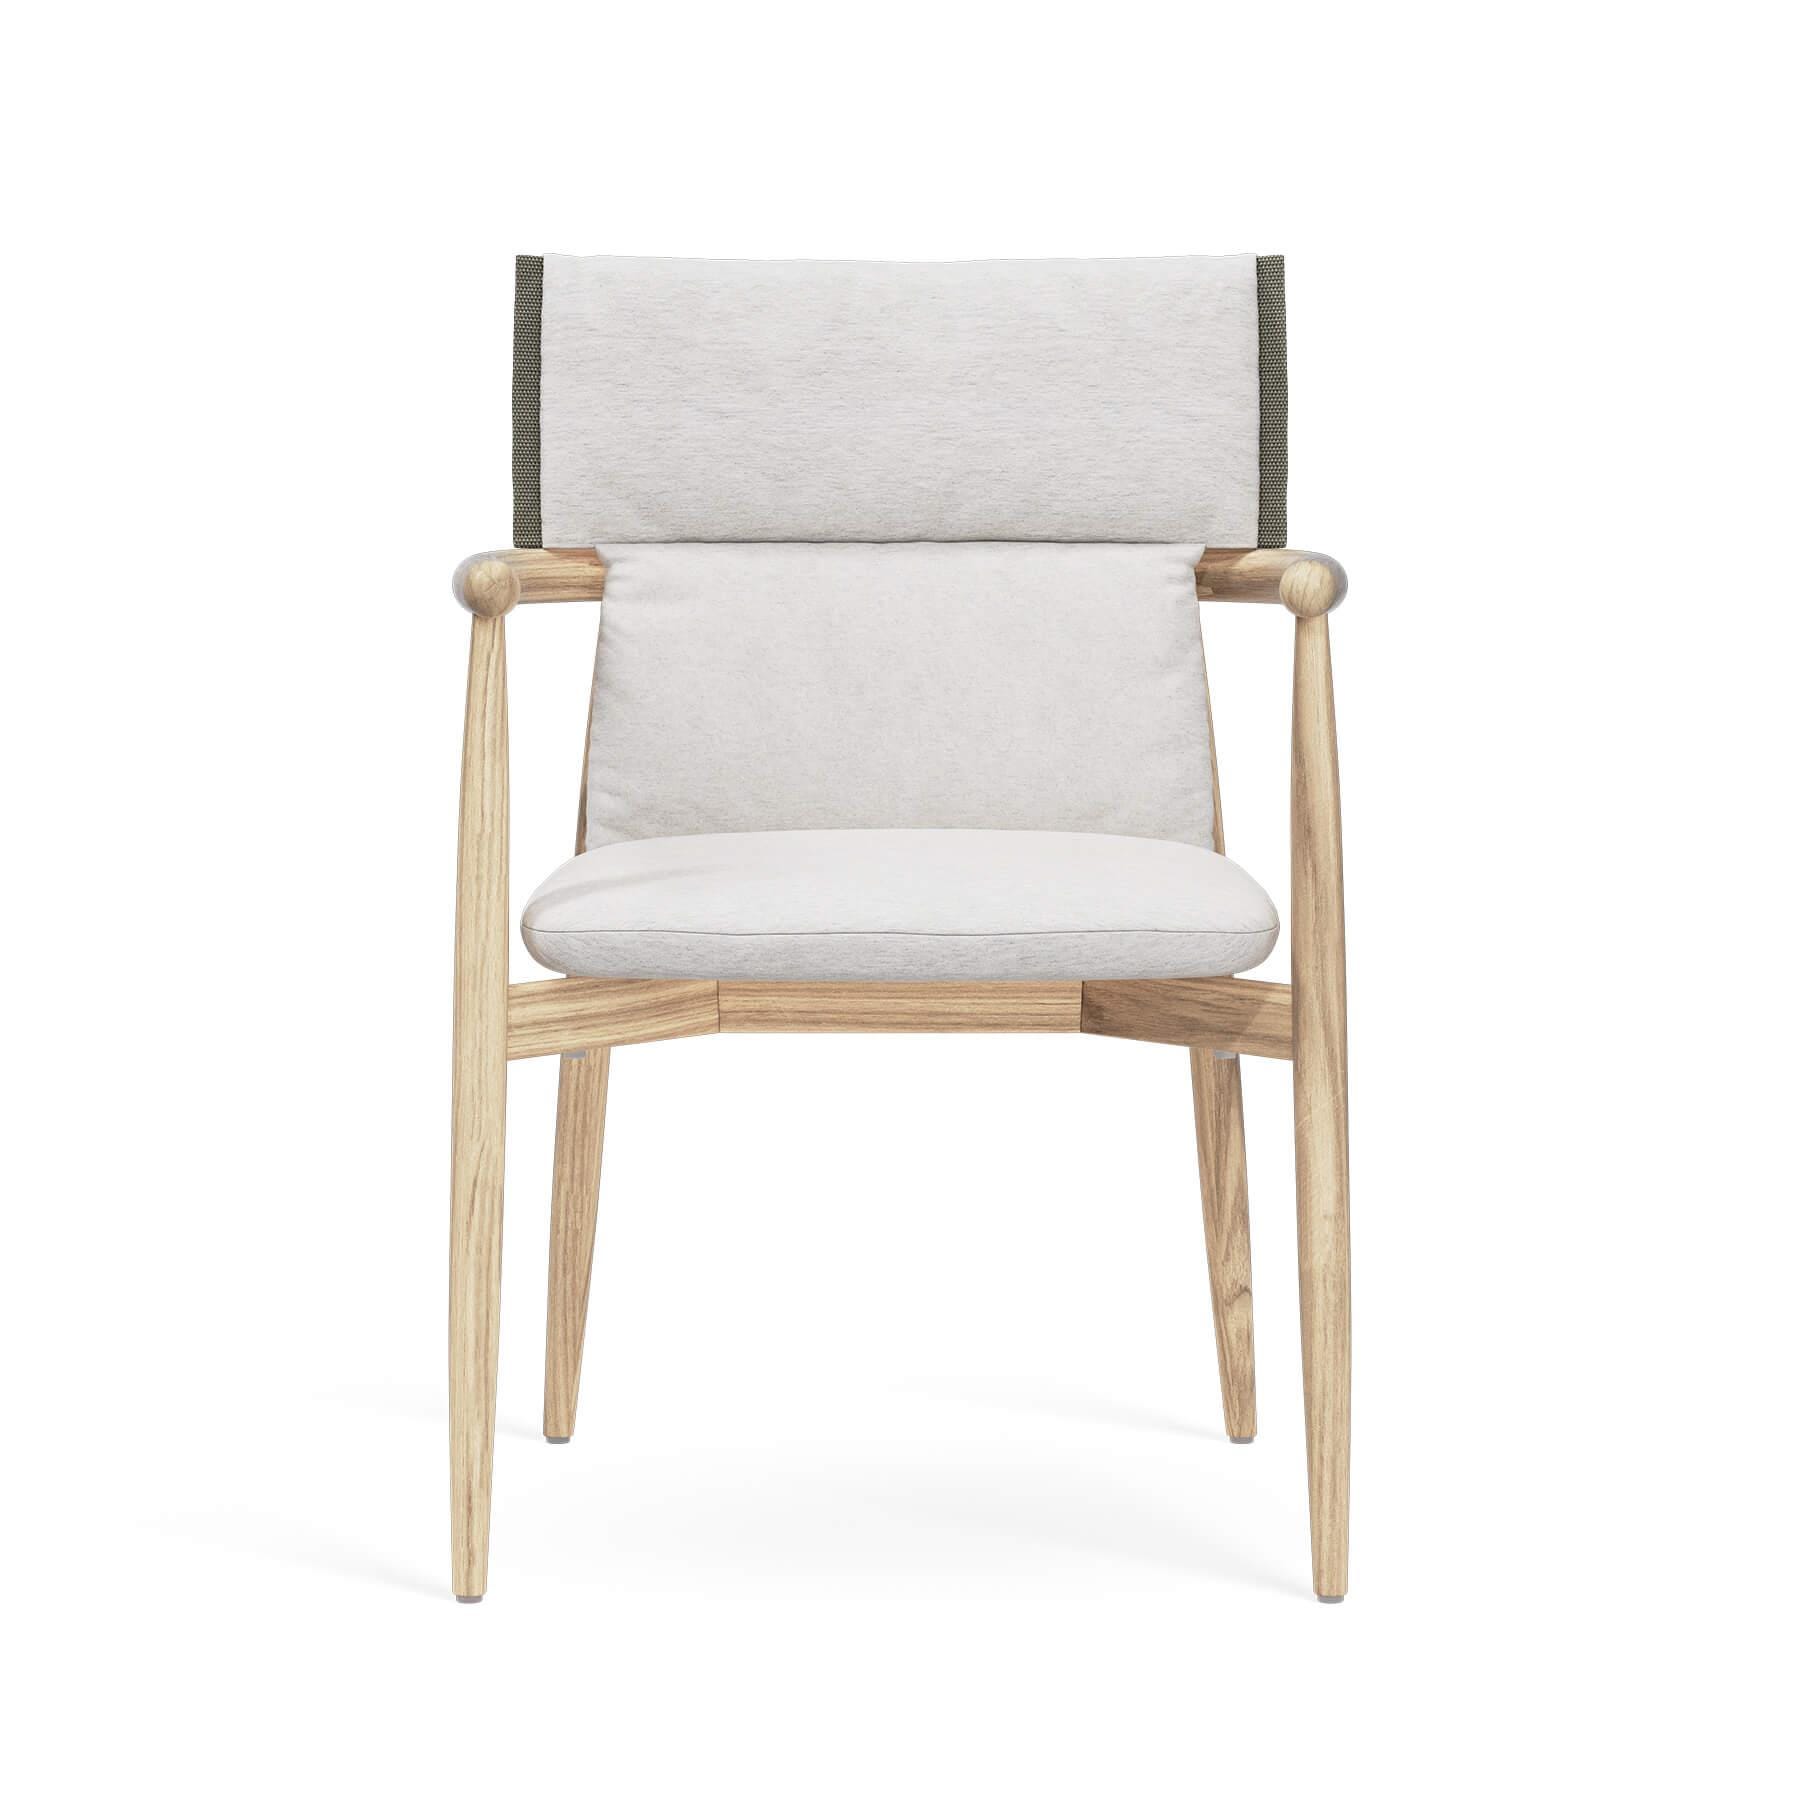 Carl Hansen Son Carl Hansen E008 Embrace Outdoor Cushion For Dining Chair White